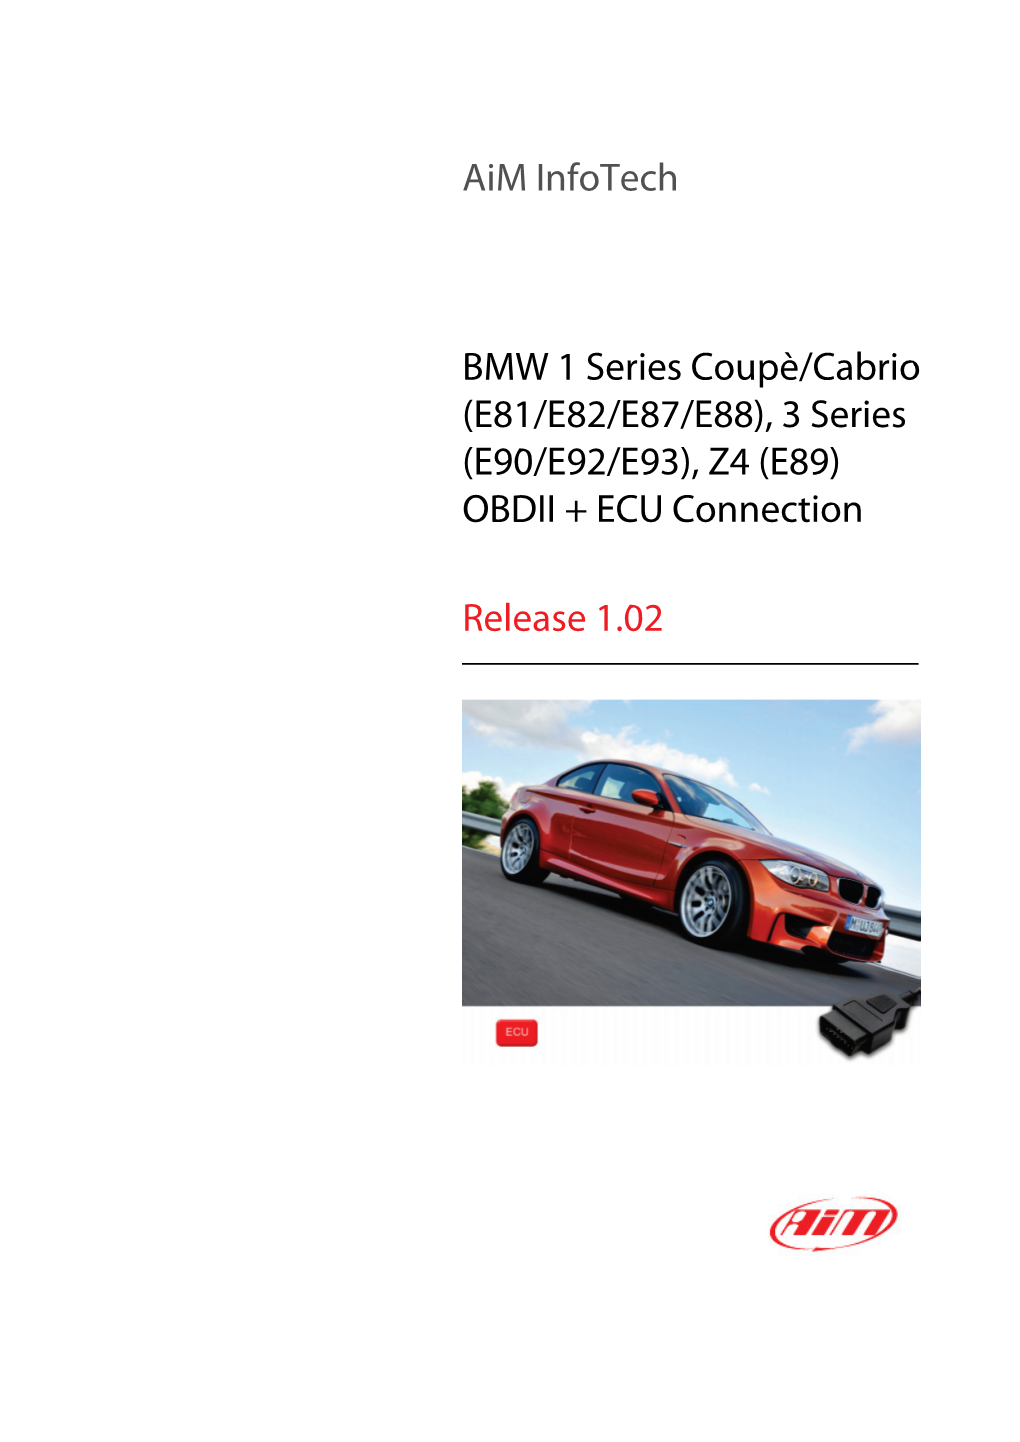 Aim Infotech BMW 1 Series Coupè/Cabrio (E81/E82/E87/E88), 3 Series (E90/E92/E93), Z4 (E89) OBDII + ECU Connection Release 1.02